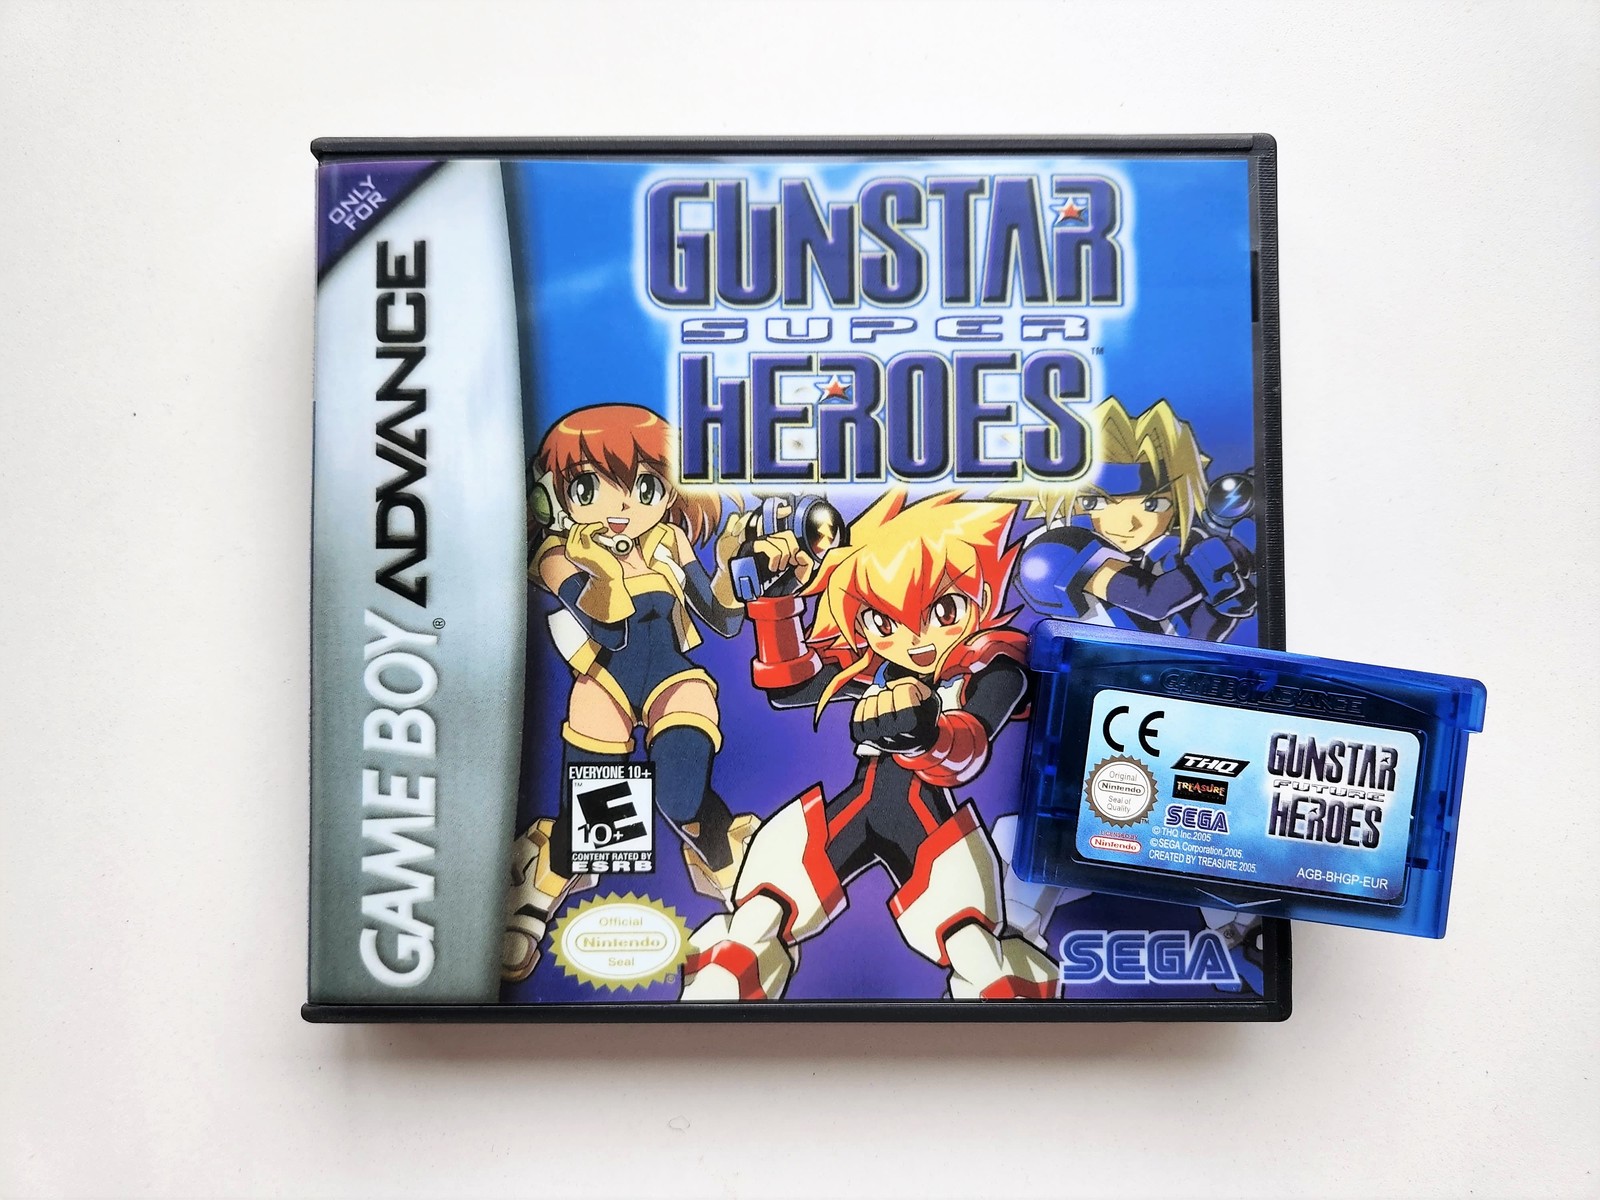 Gunstar Super Heroes / Future Heroes - Gameboy Advance (GBA) Custom Case / Game